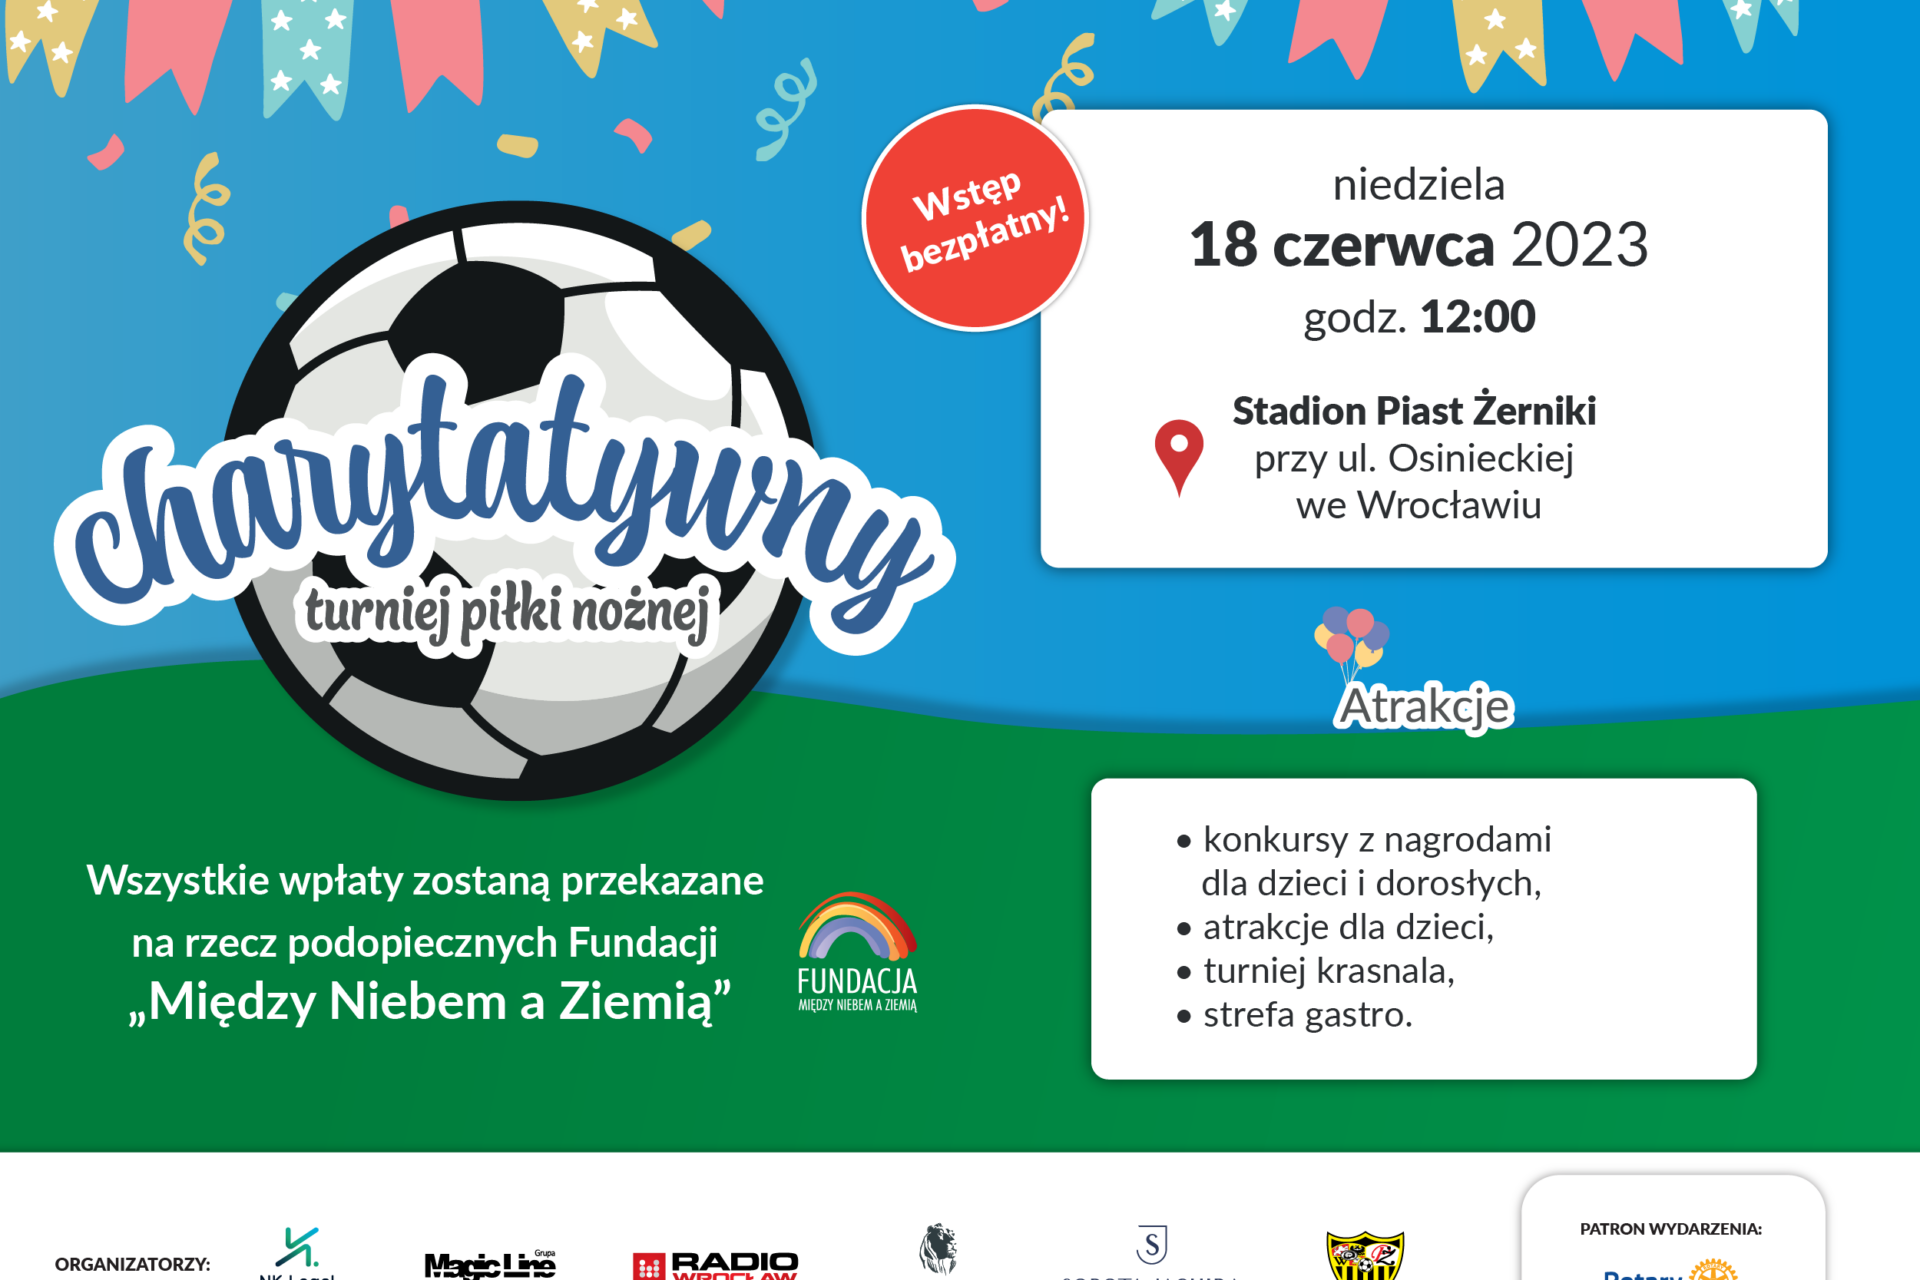 Charytatywny turniej piłki nożnej „Prawnicy i Przyjaciele”. Specjalna zbiórka uruchomiona na portalu Siepomaga.pl